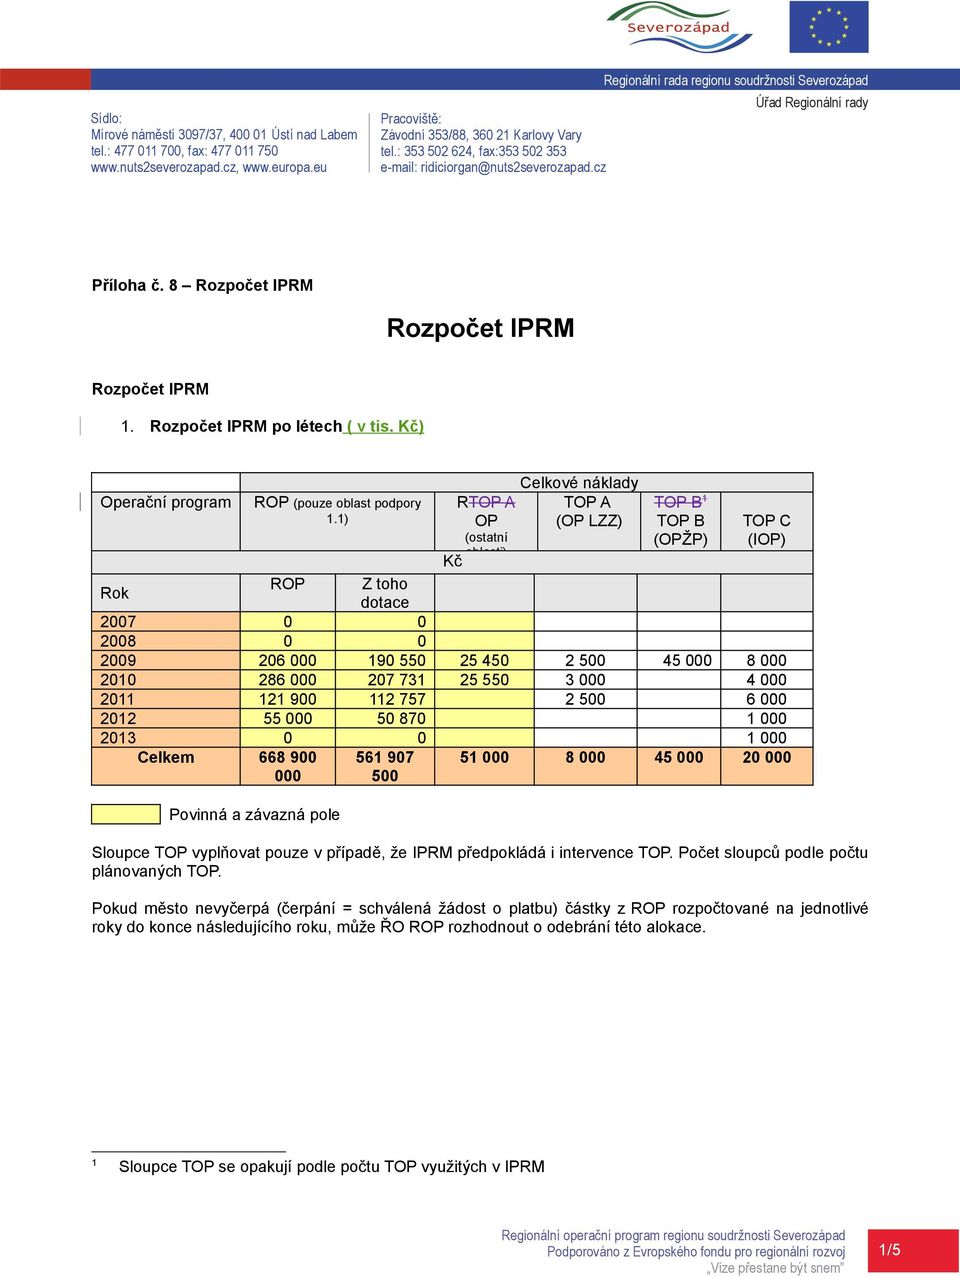 Rozpočet IPRM po létech ( v tis. Kč) Operační program ROP (pouze oblast podpory 1.